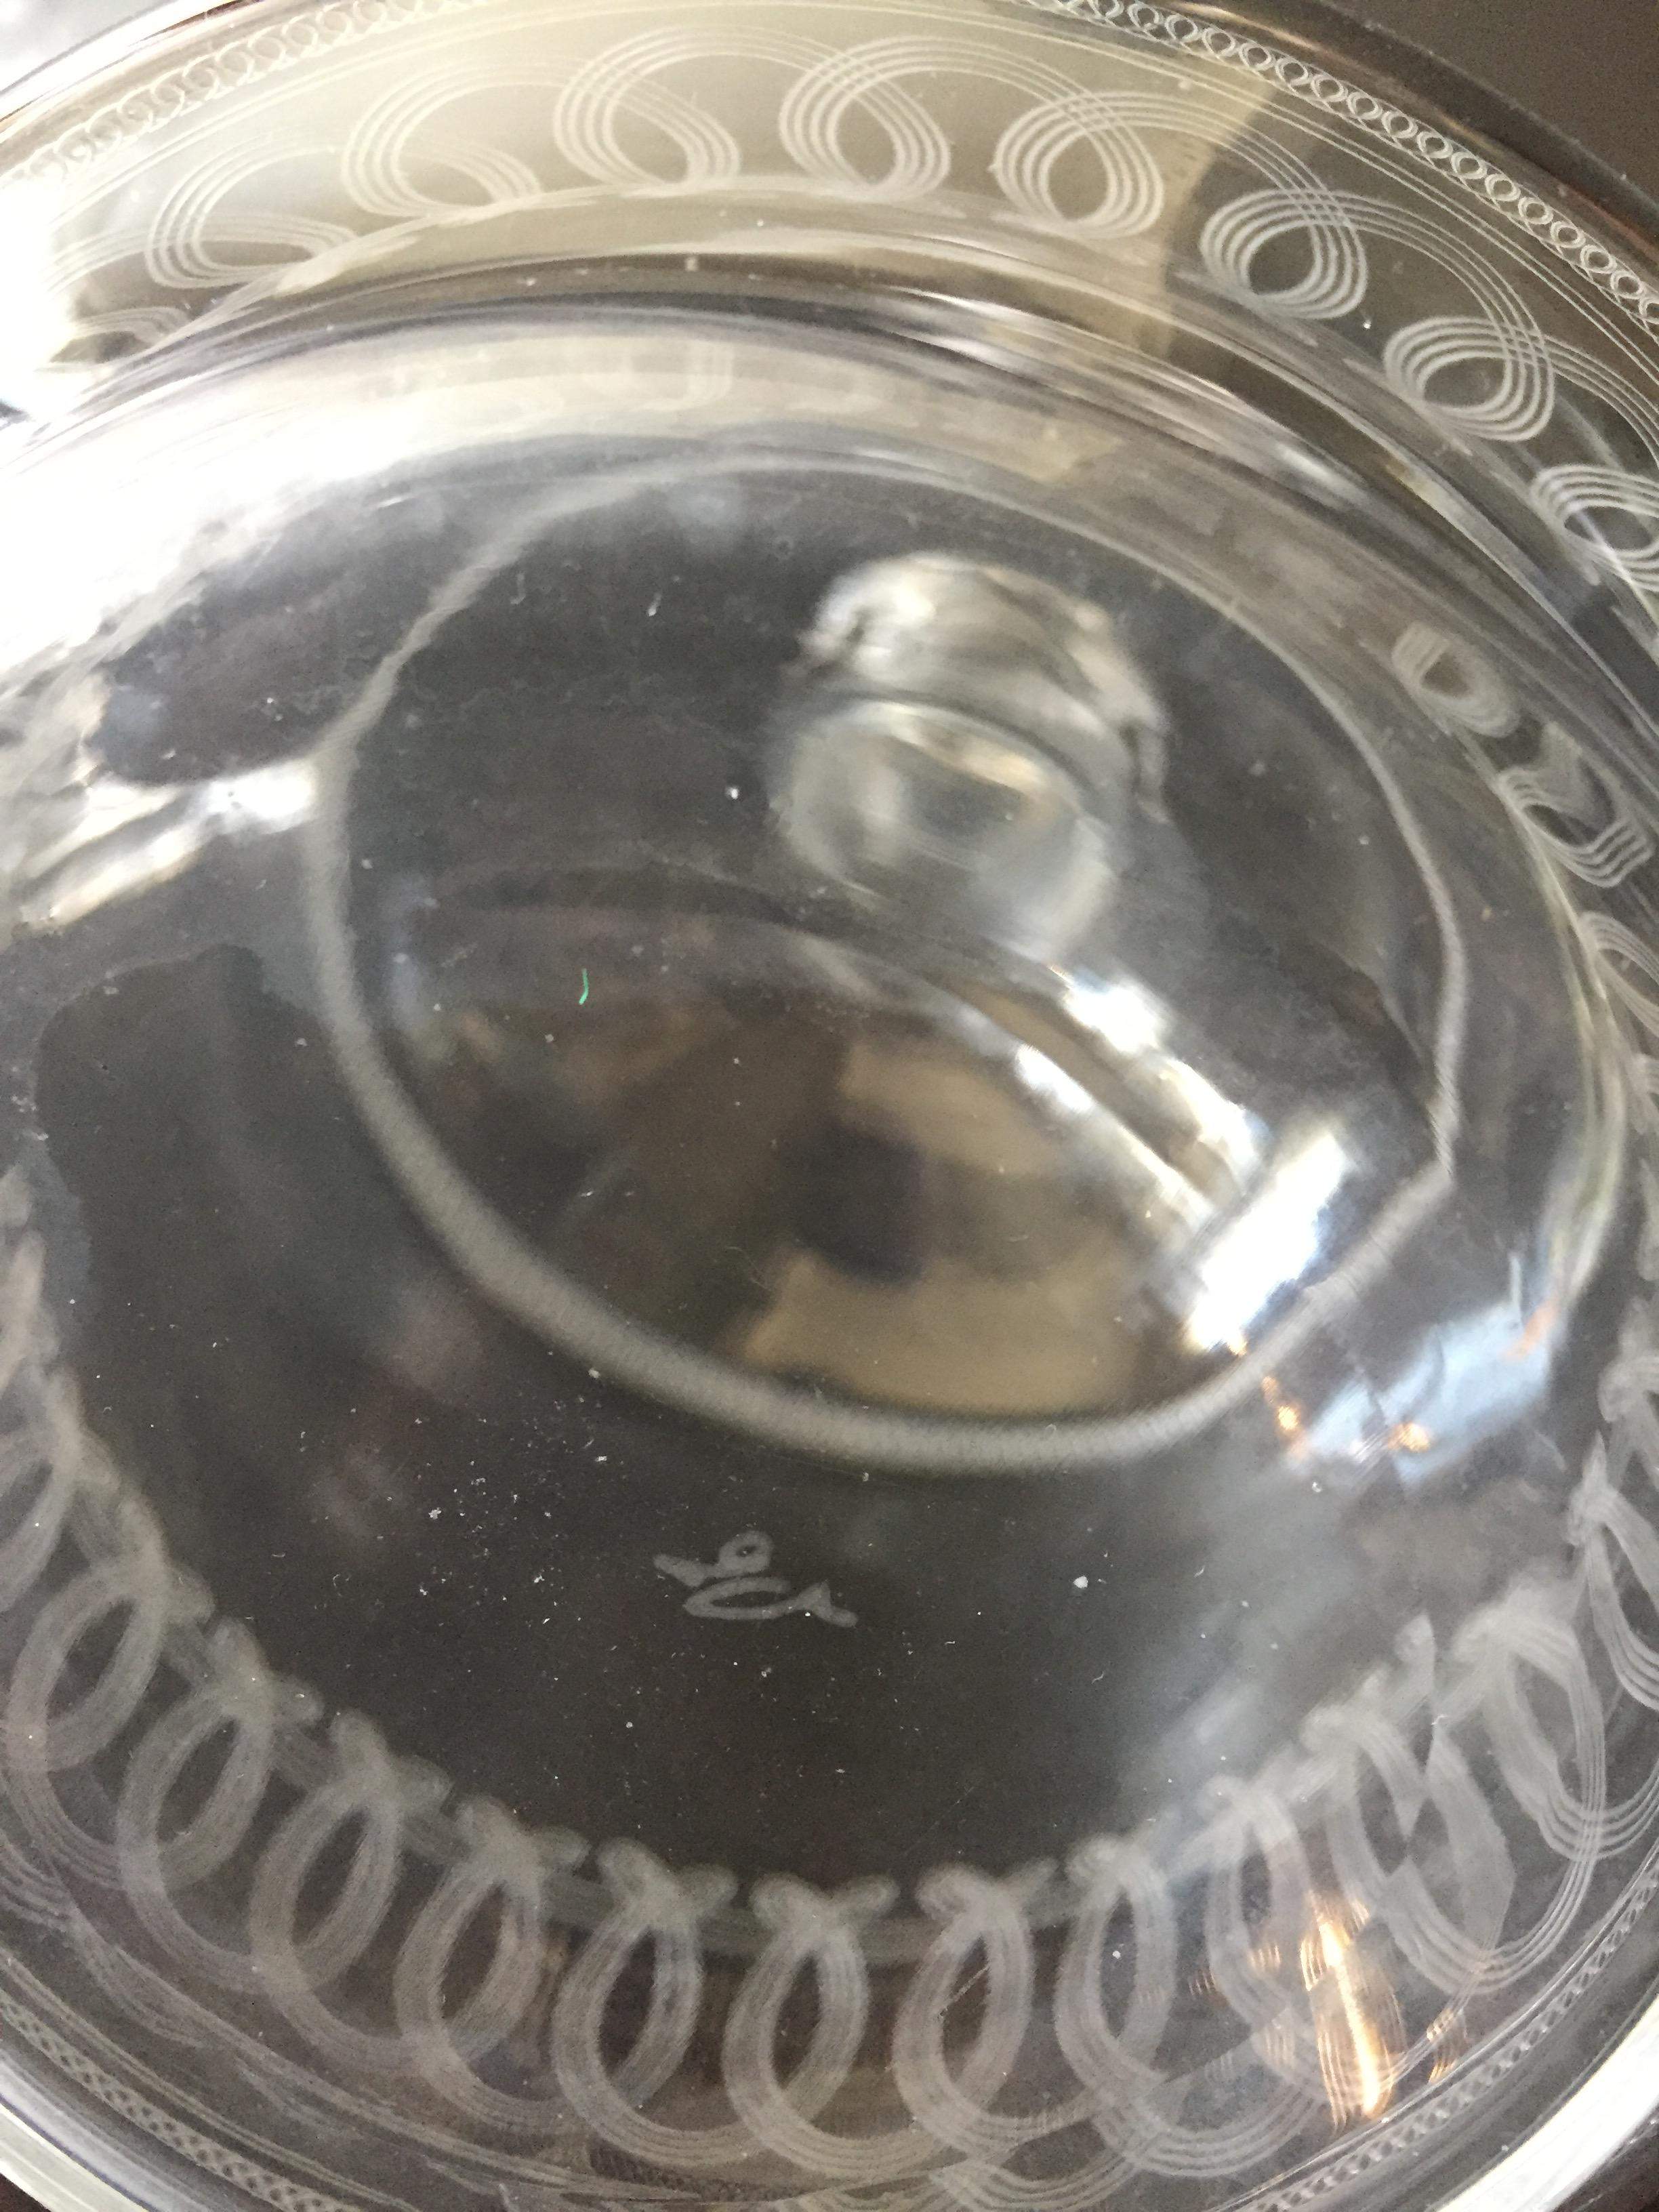 Antike Glaskaraffe mit ein paar Gläser